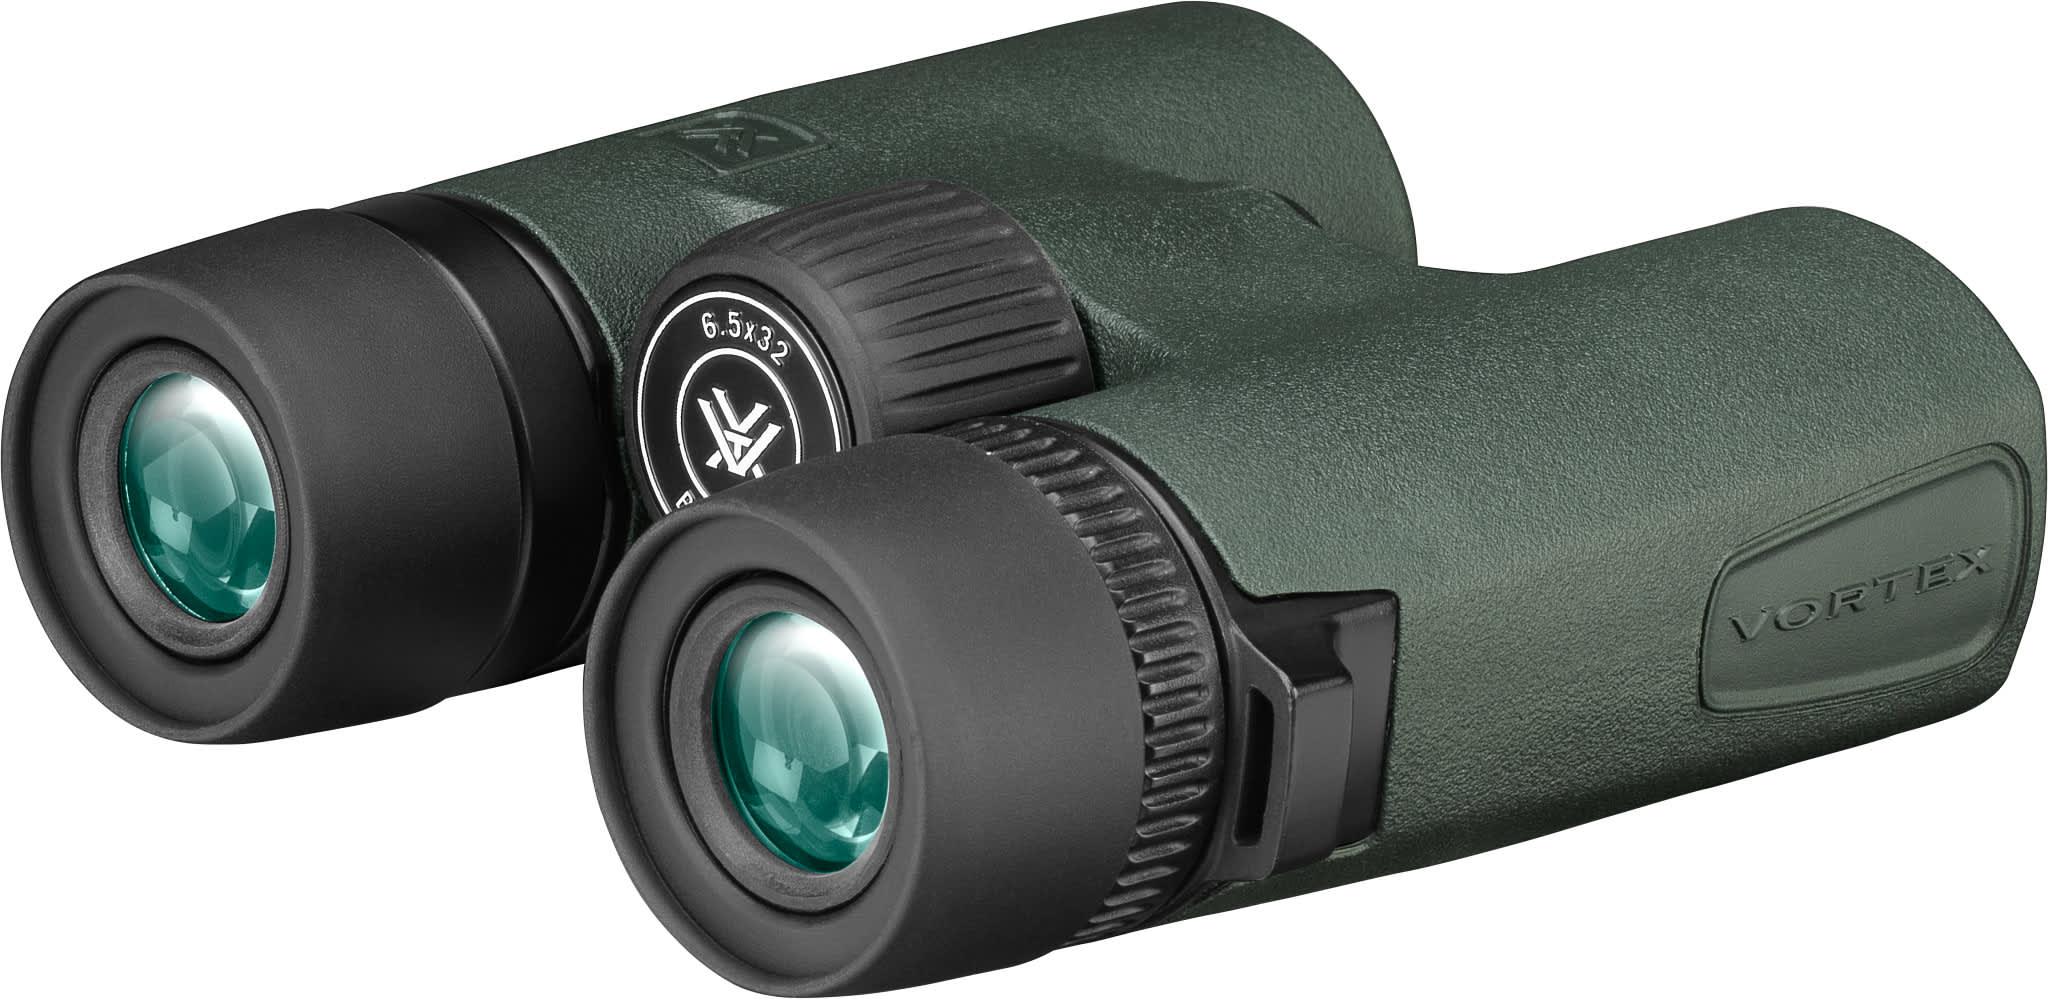 Vortex® Bantam™ HD 6.5x32 Youth Binocular